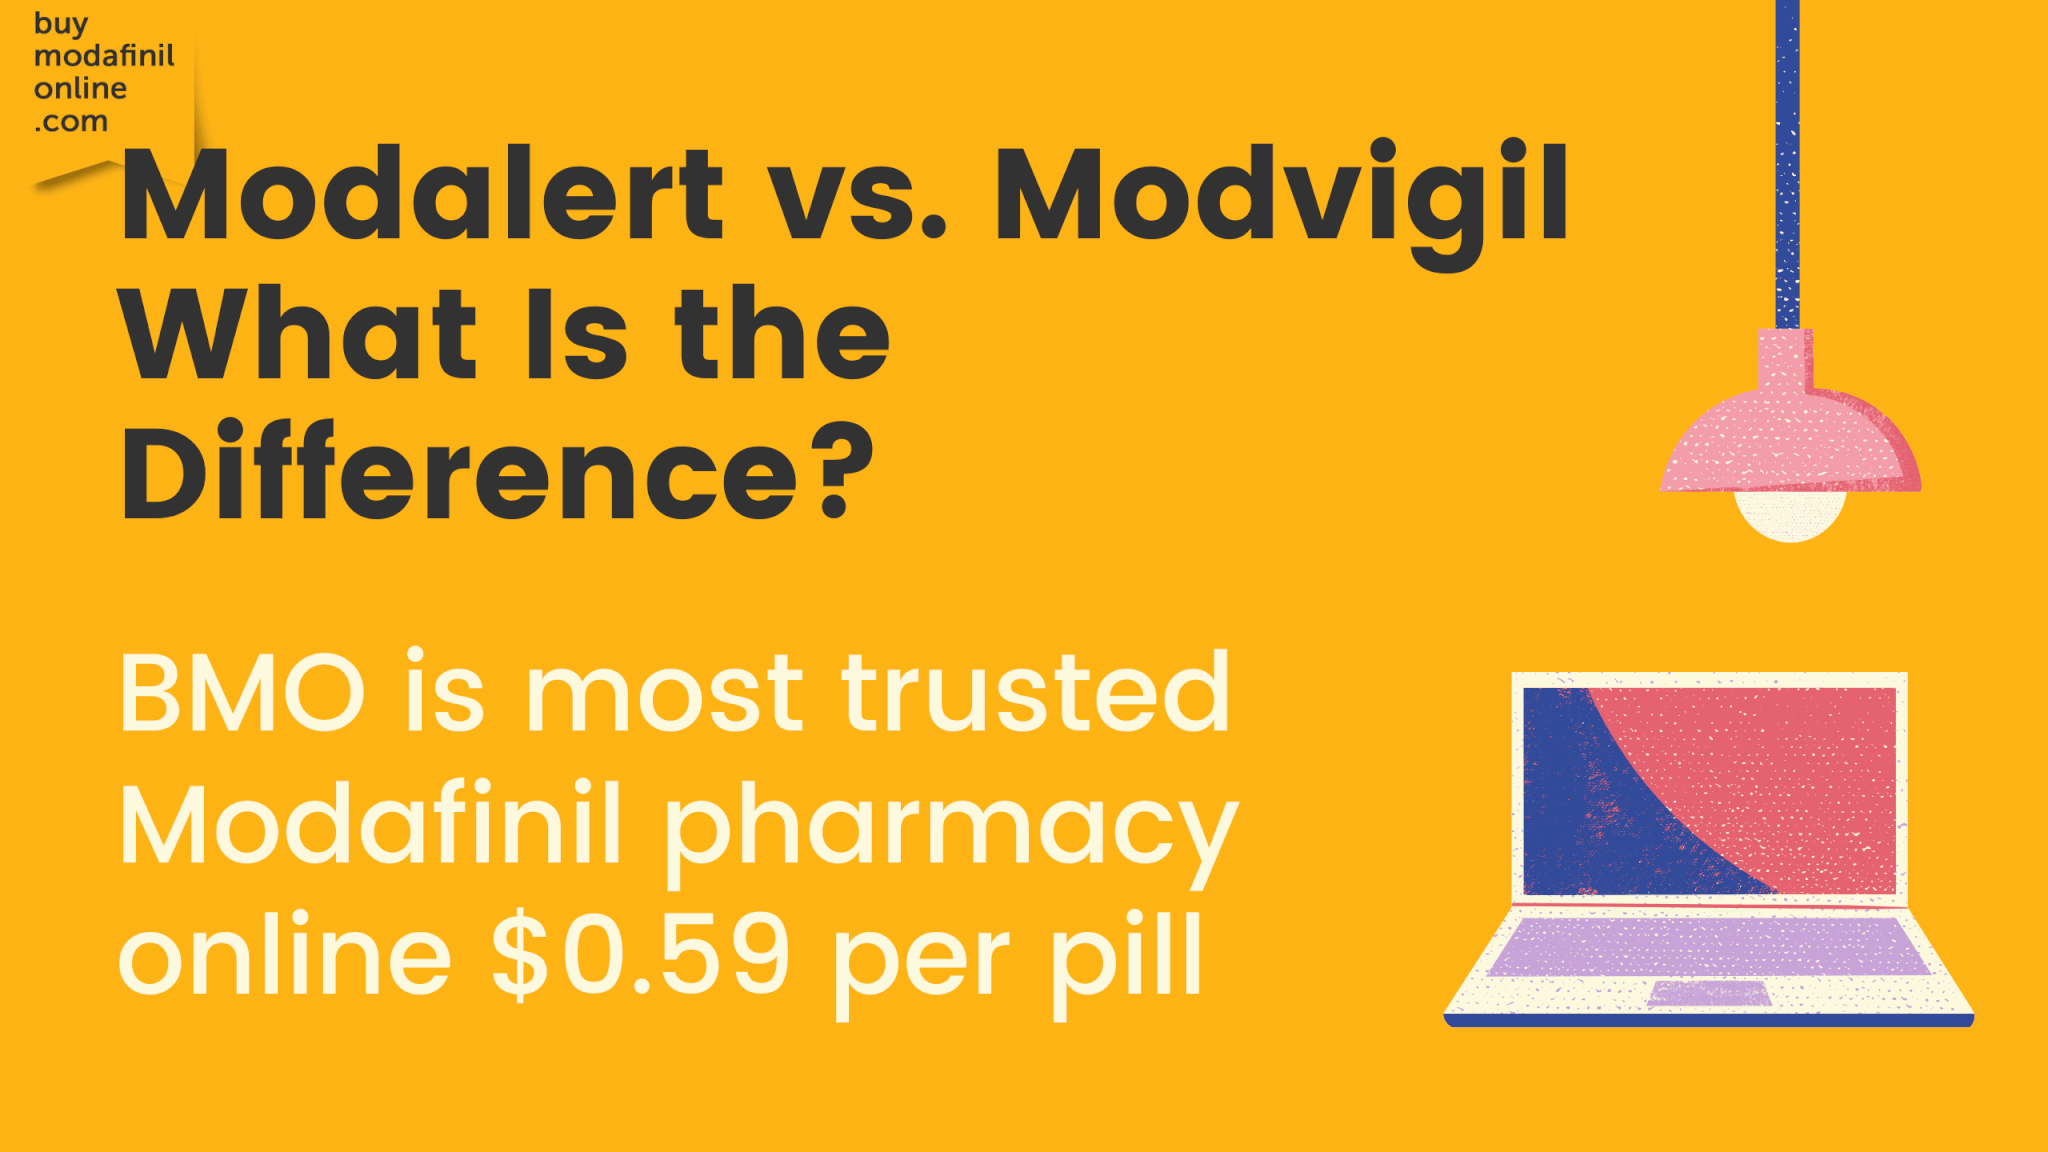 Comparativa de Modalert y Modvigil: ¿cuál es mejor?